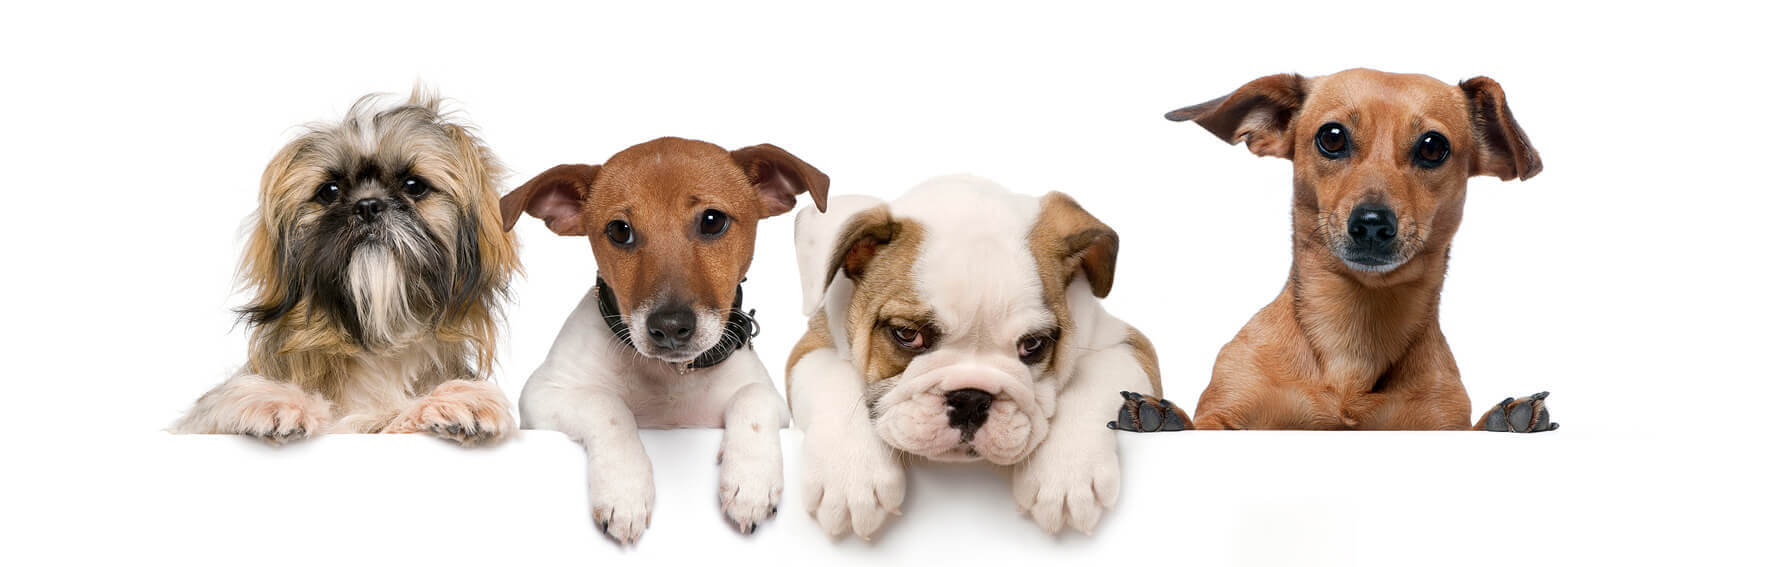 Los Suenos Veterinary – A family of veterinary clinics